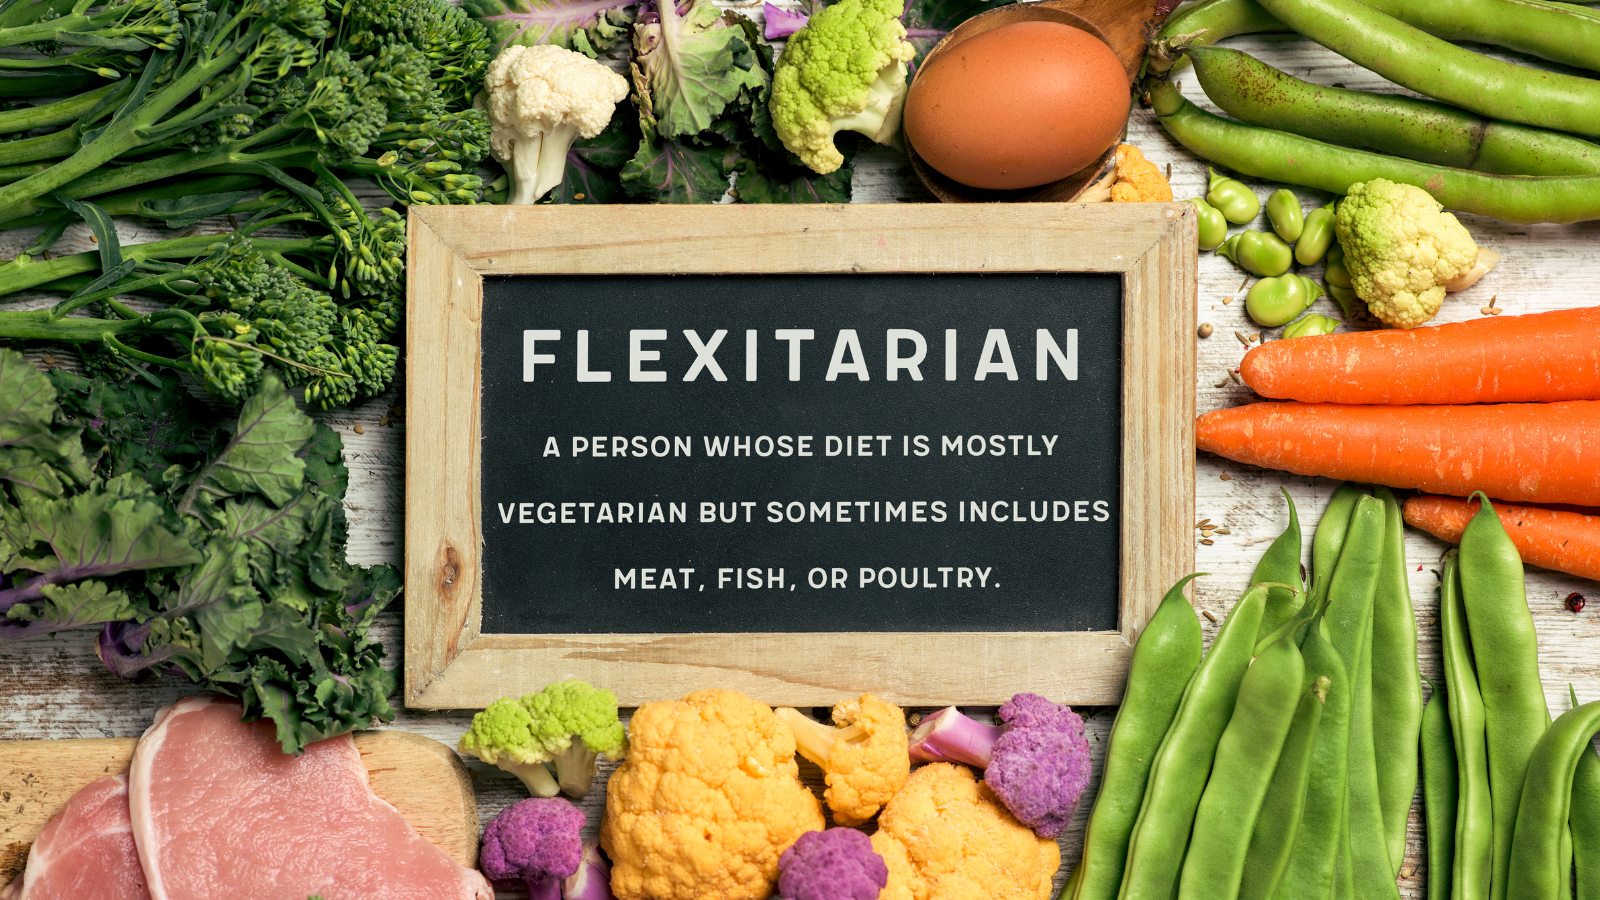 Chế độ ăn flexitarian cho thấy tính linh hoạt cho phép bạn kết hợp cả thực vật và động vật vào thực đơn